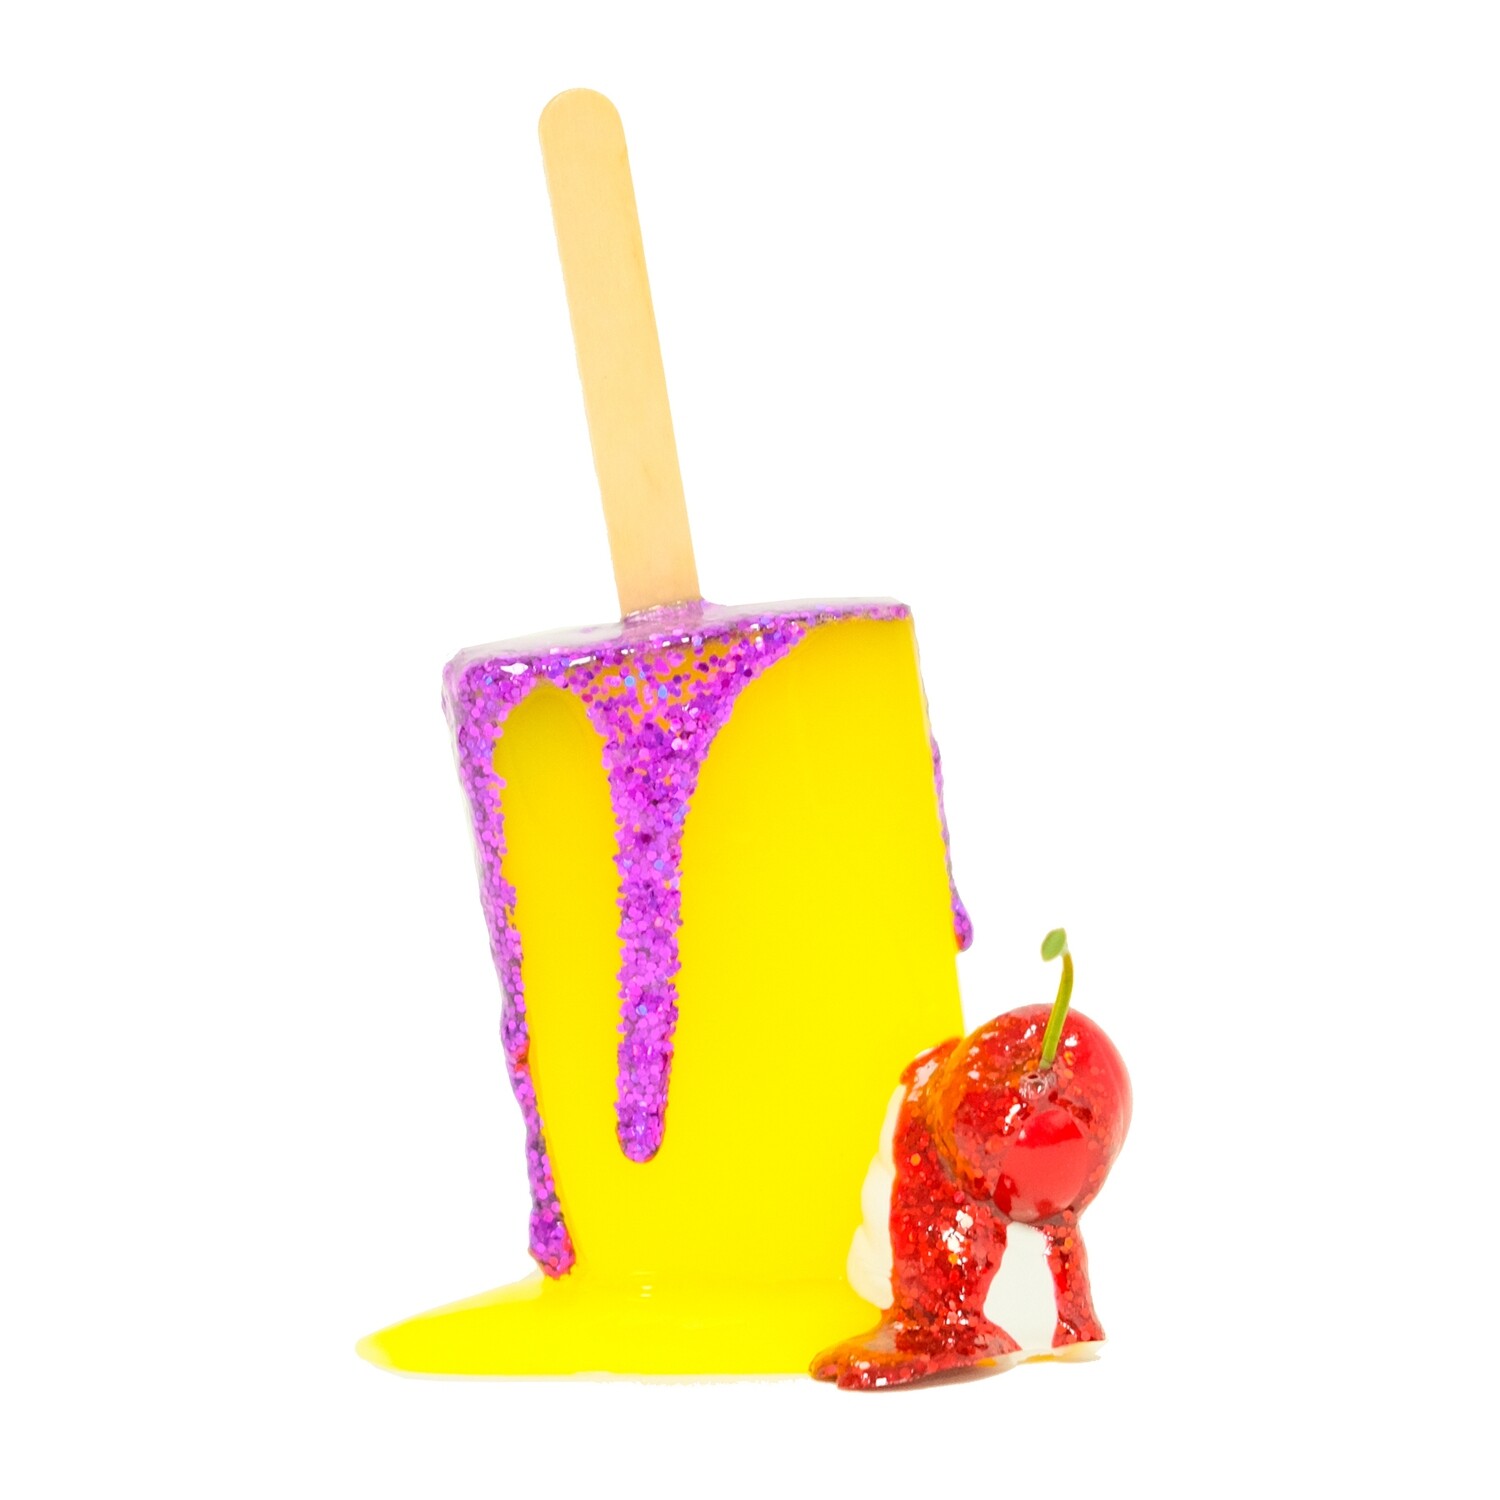 Melting Popsicle Art - 64 - Original Melting Pops